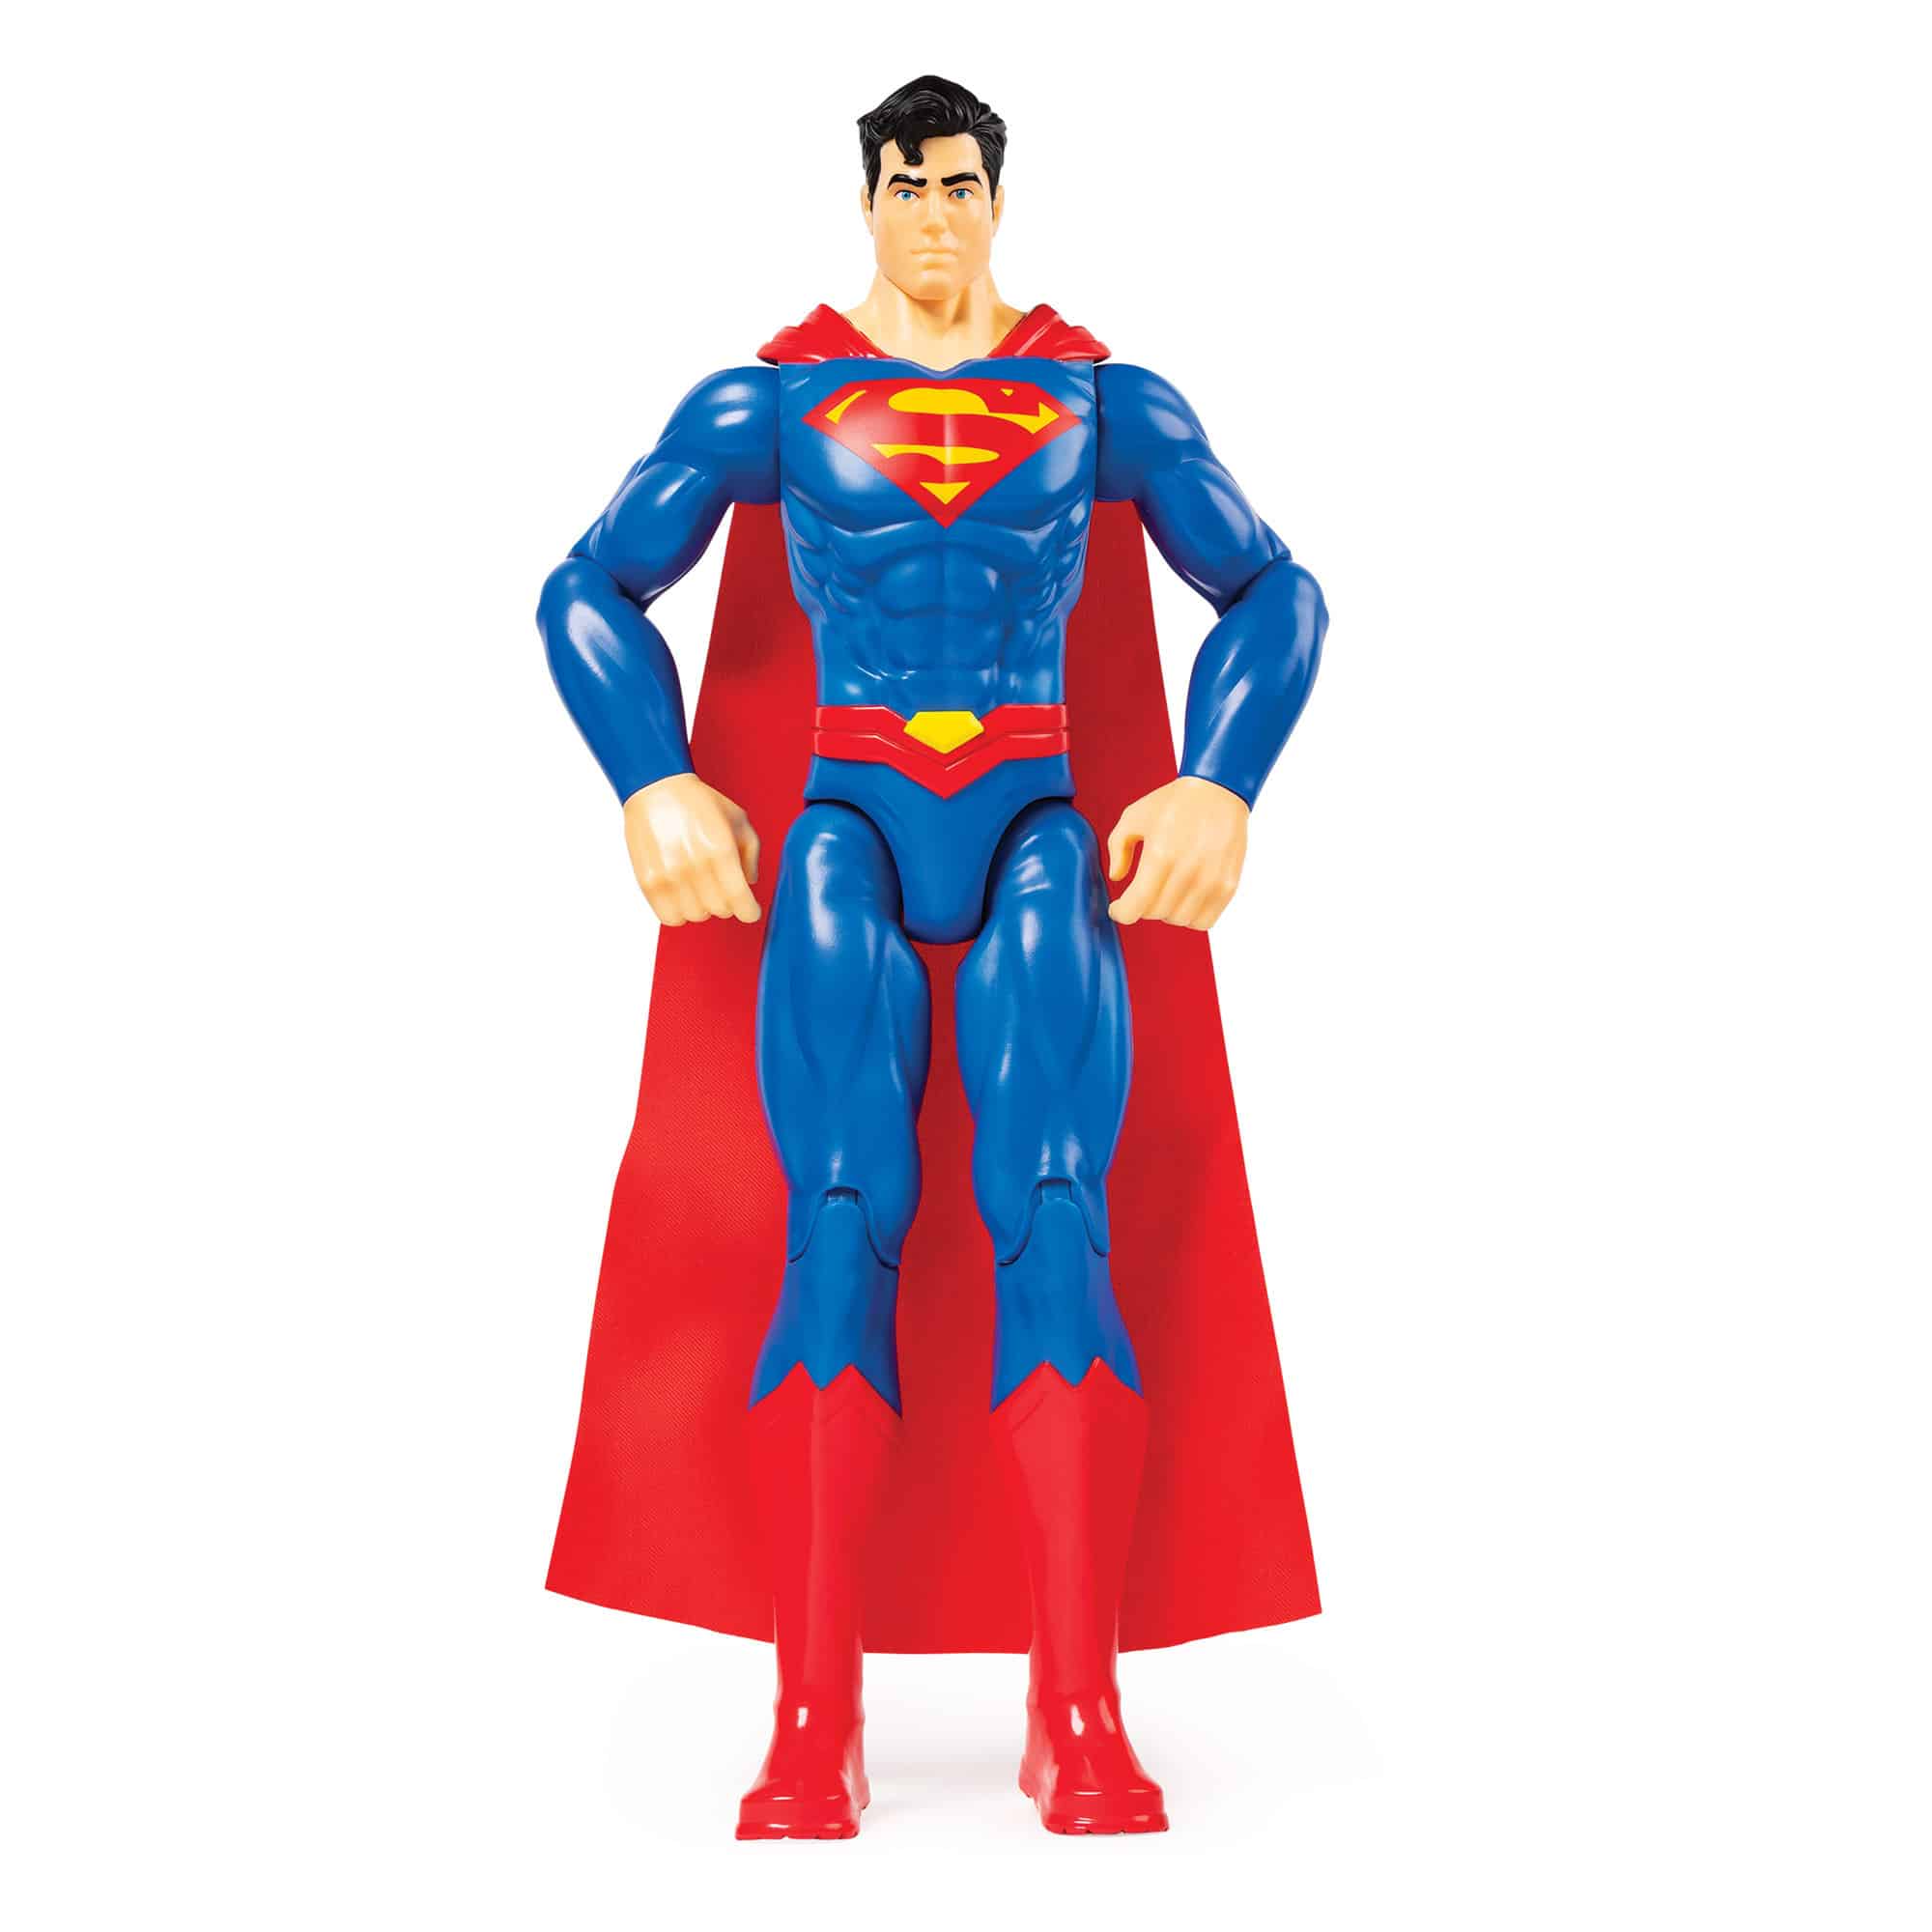 DC Comics - 12 Inch Action Figure - Superman